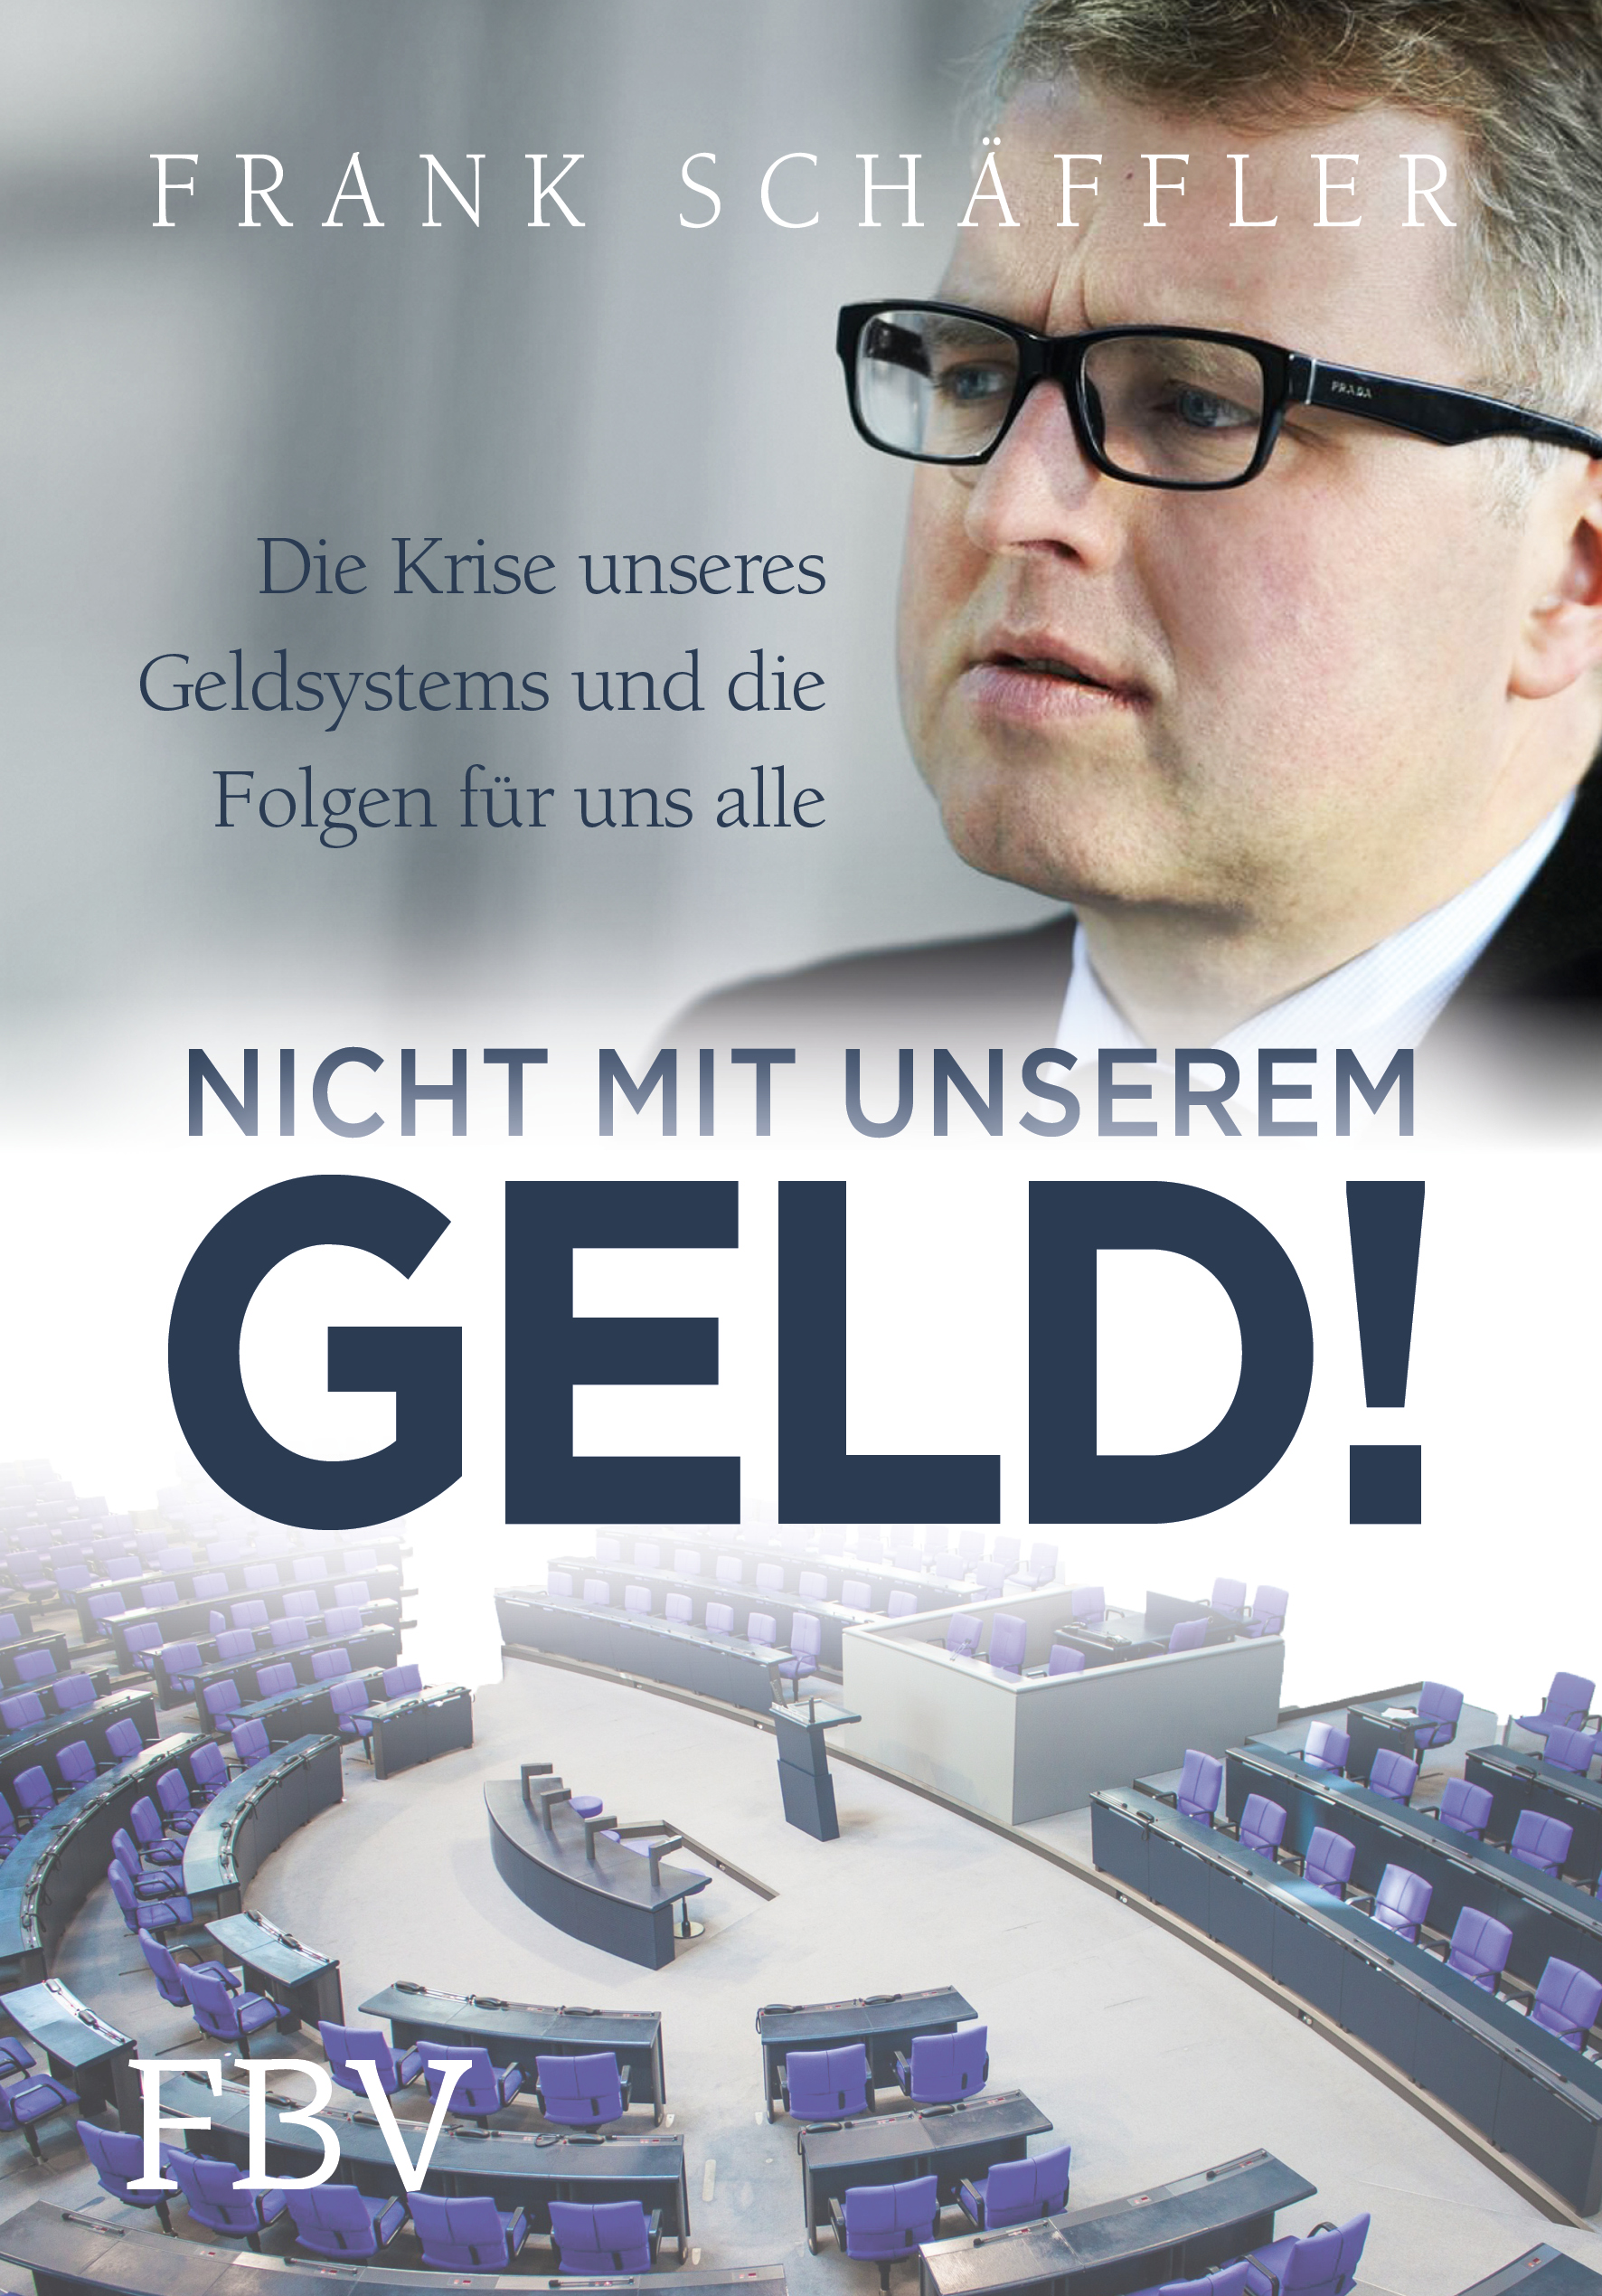 Buch-Cover-Schaeffler_Geld_SU3